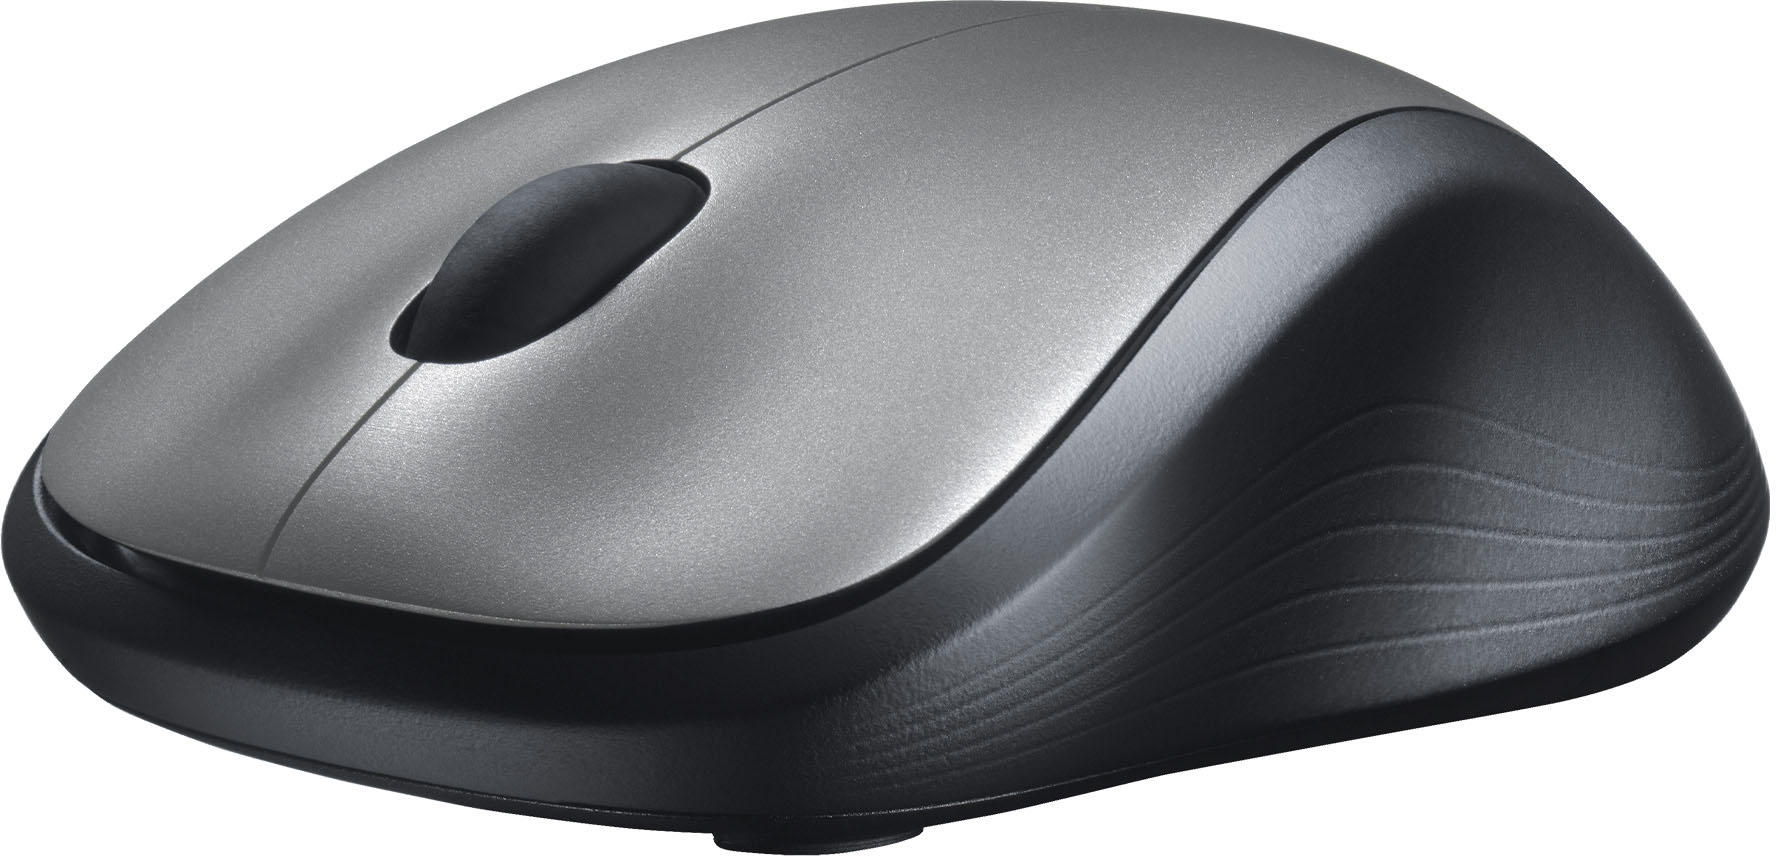 Eigenwijs roem herberg Logitech M310 Wireless Optical Ambidextrous Mouse Silver 910-001675 - Best  Buy